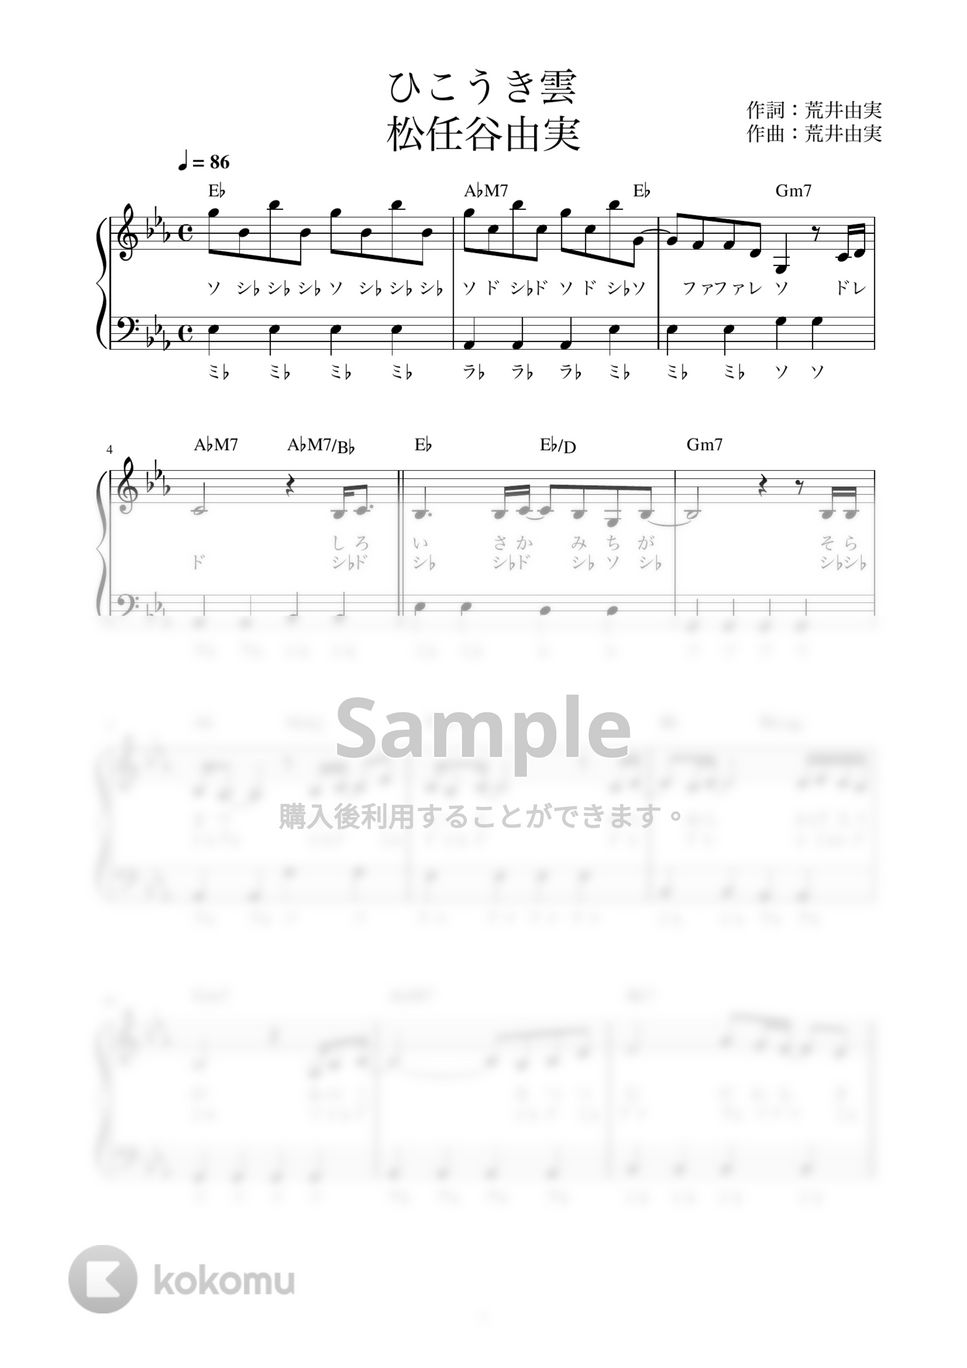 松任谷由実 - ひこうき雲 (かんたん / 歌詞付き / ドレミ付き / 初心者) by piano.tokyo